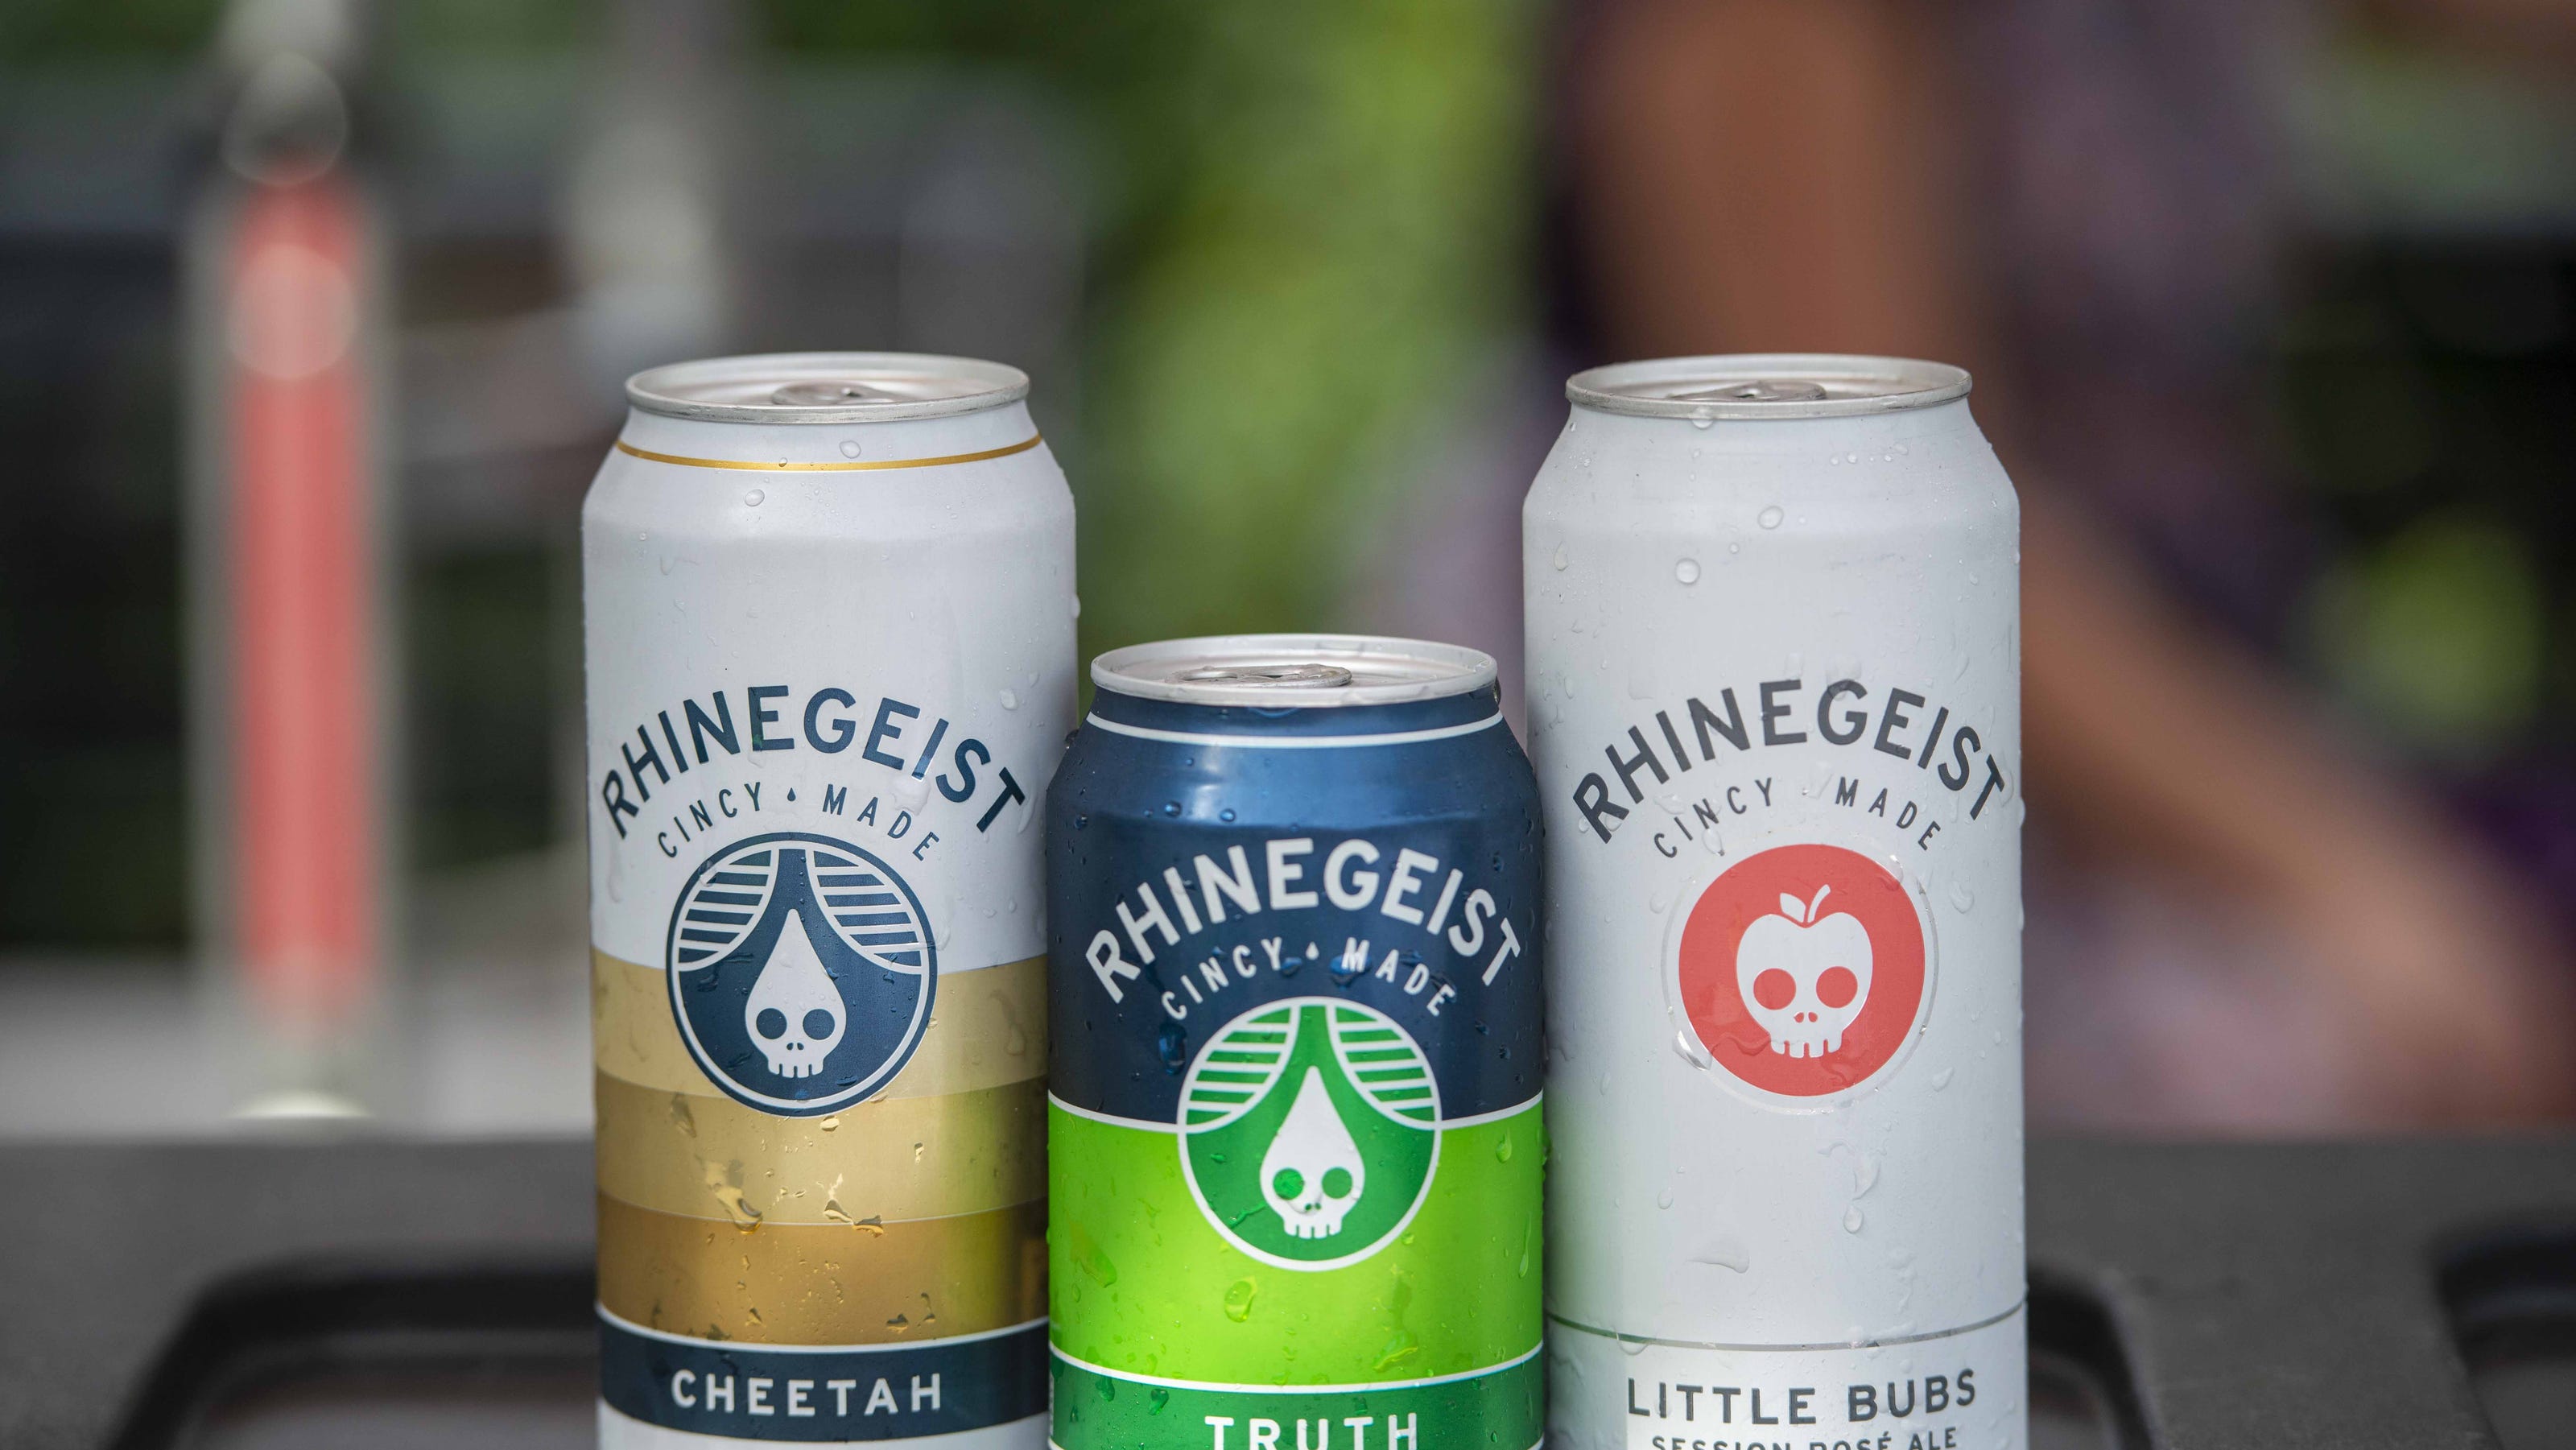 Rhinegeist, Great Lakes were topselling craft beers in 2020